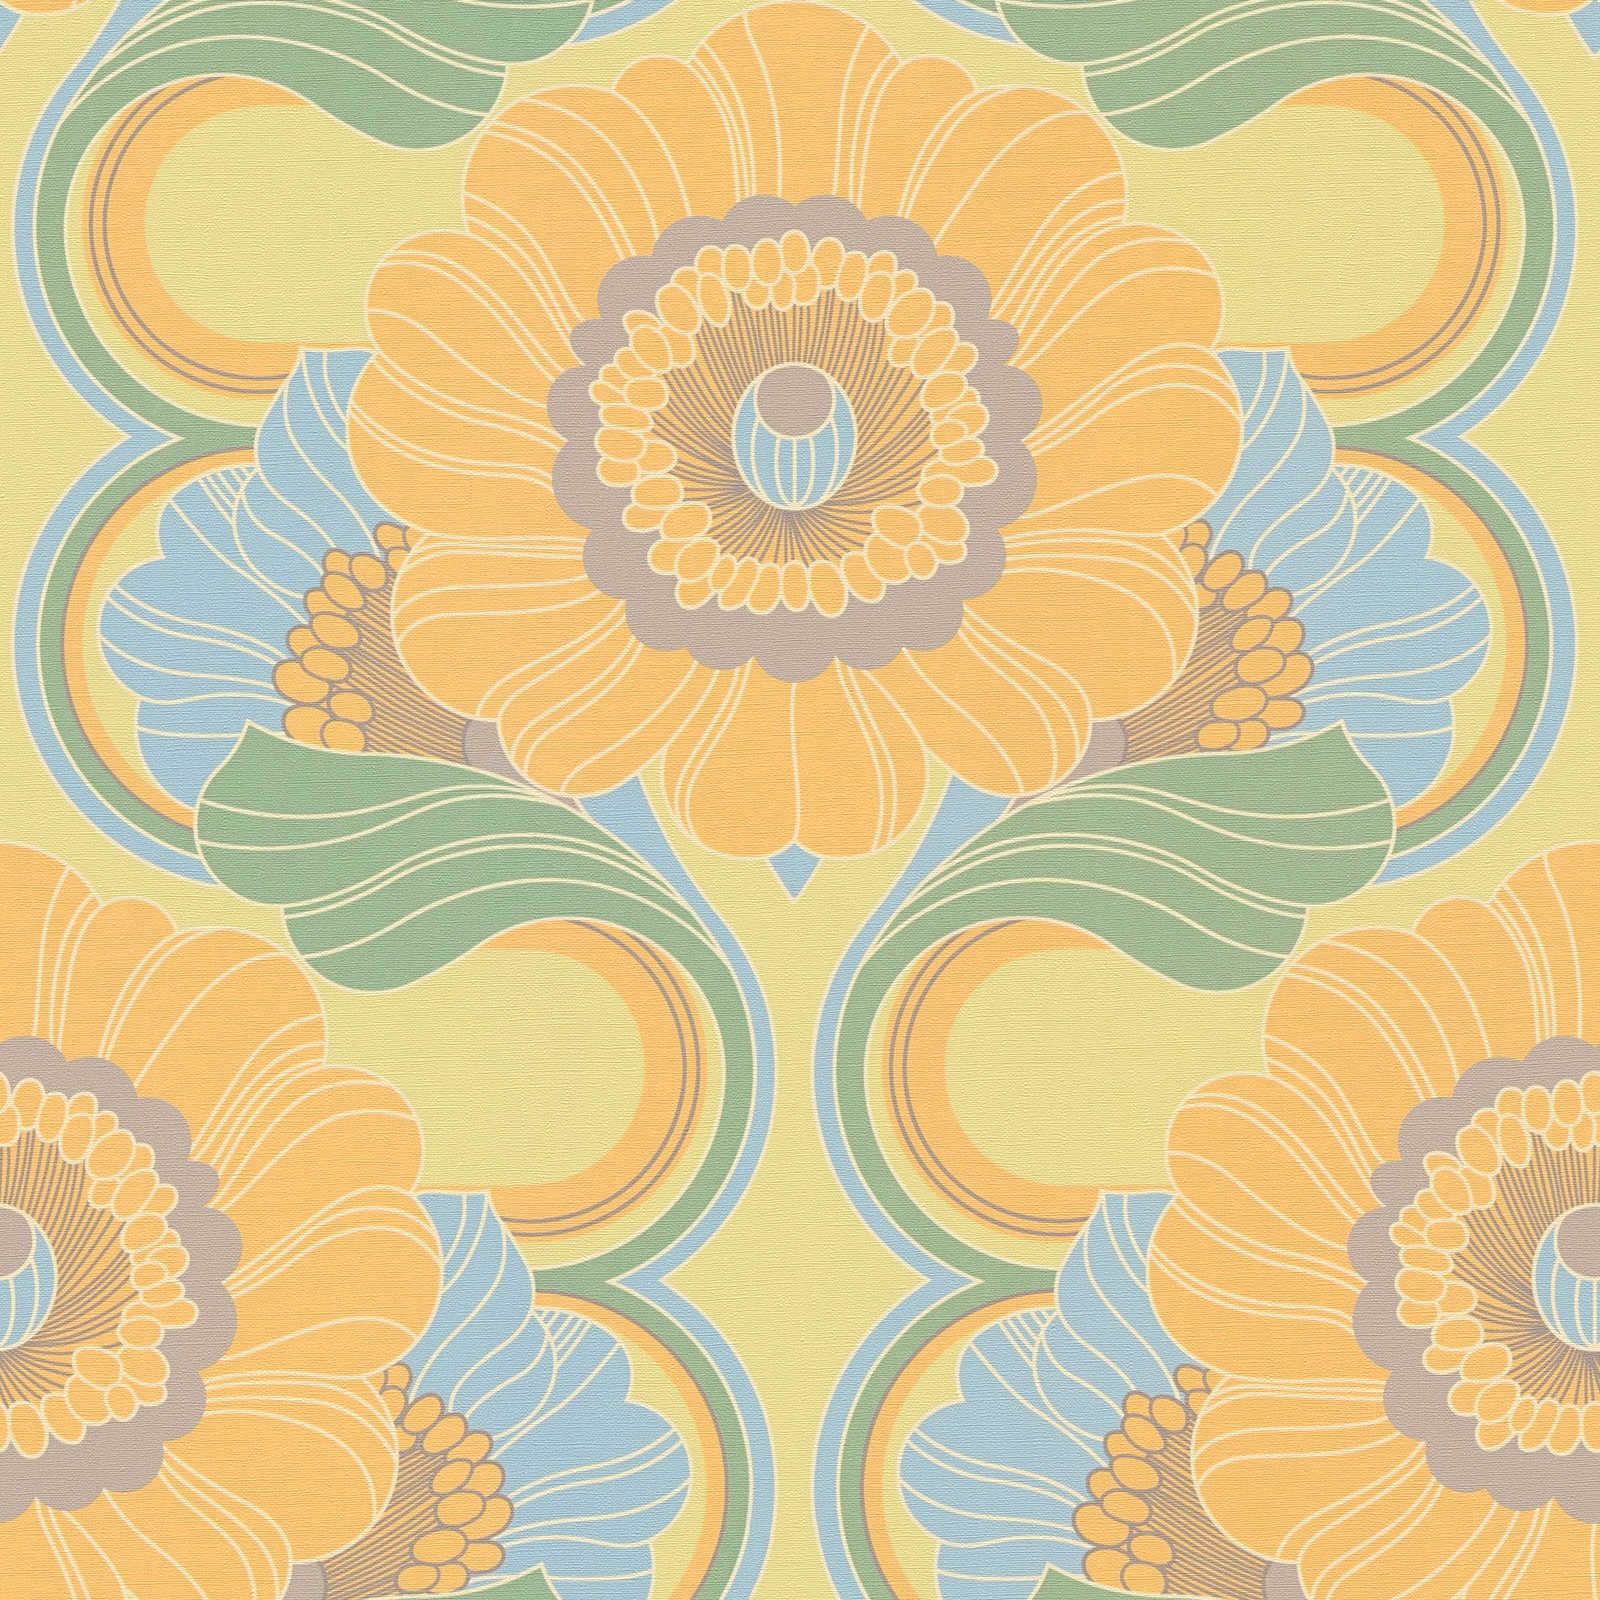             Papel pintado retro con textura ligera y motivos florales - azul, amarillo, verde
        